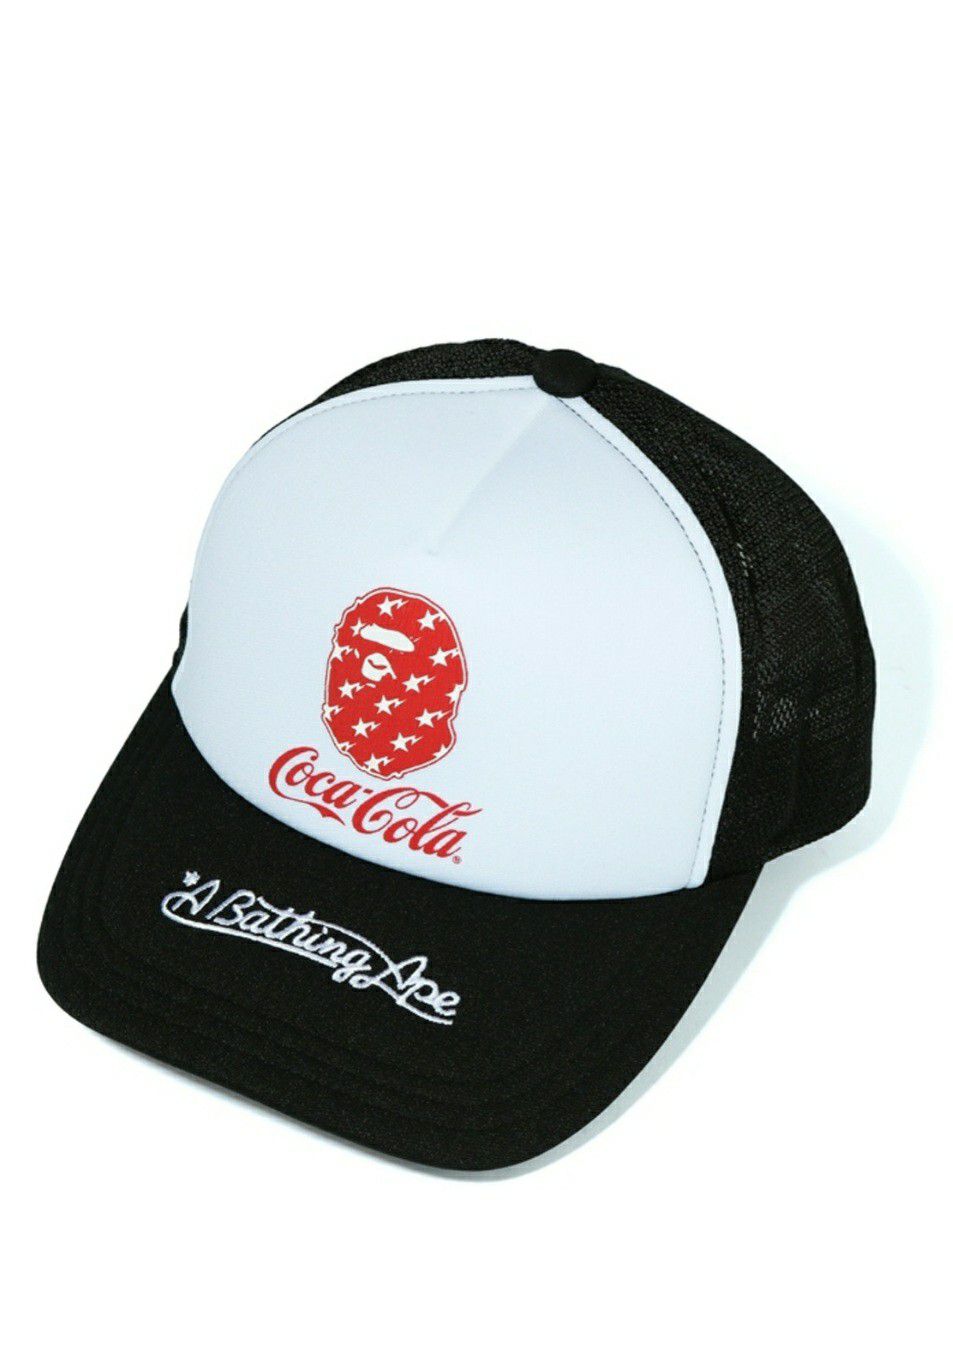 BAPE x Coca Cola Mesh Cap Black